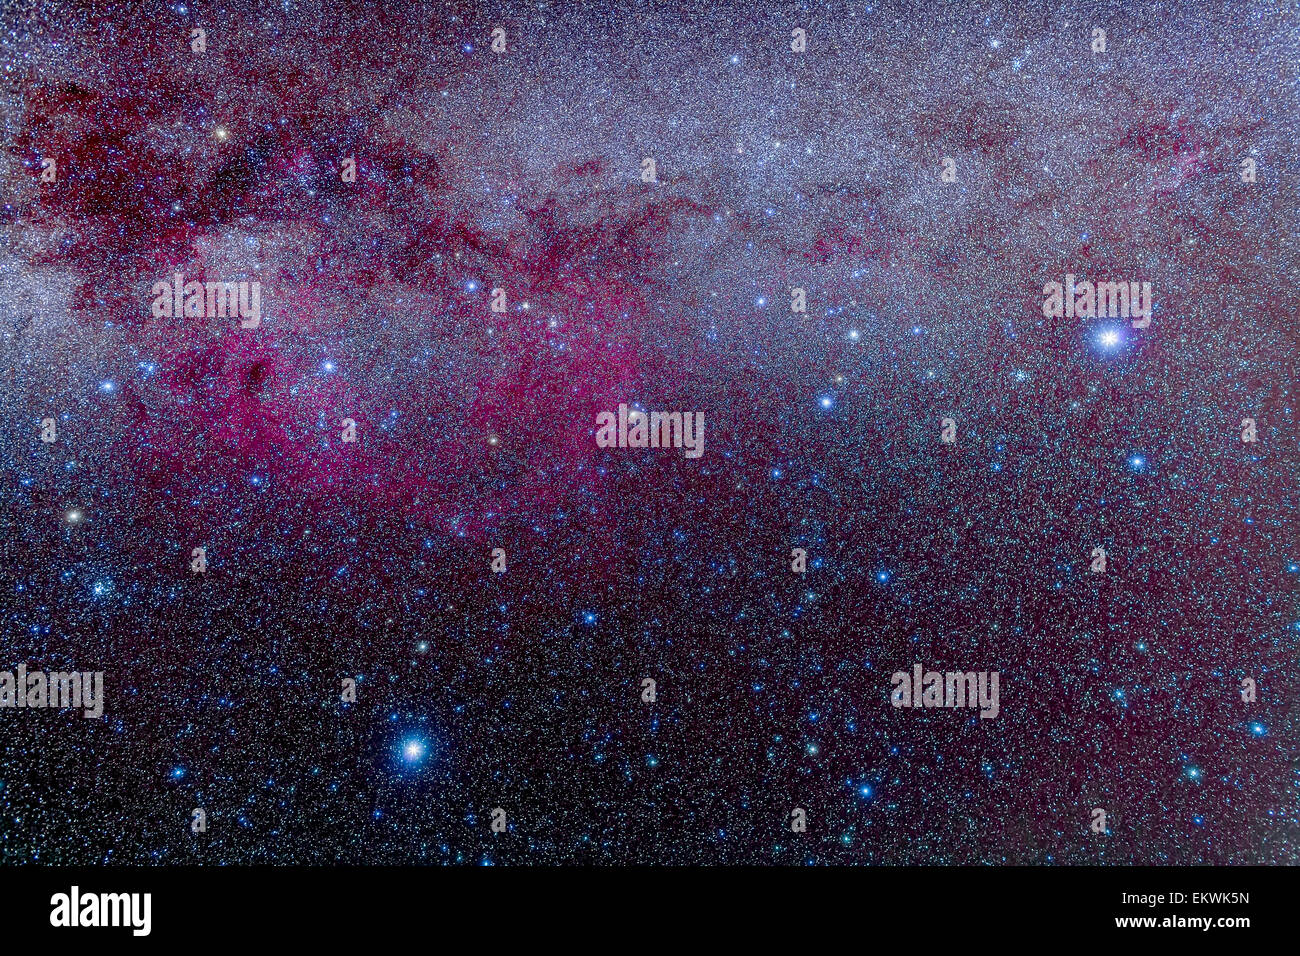 Le sud de la Voie lactée de Canis Major à Carina, y compris Puppis et Vela et la grande nébuleuse de Gum, un complexe b interstellaire Banque D'Images